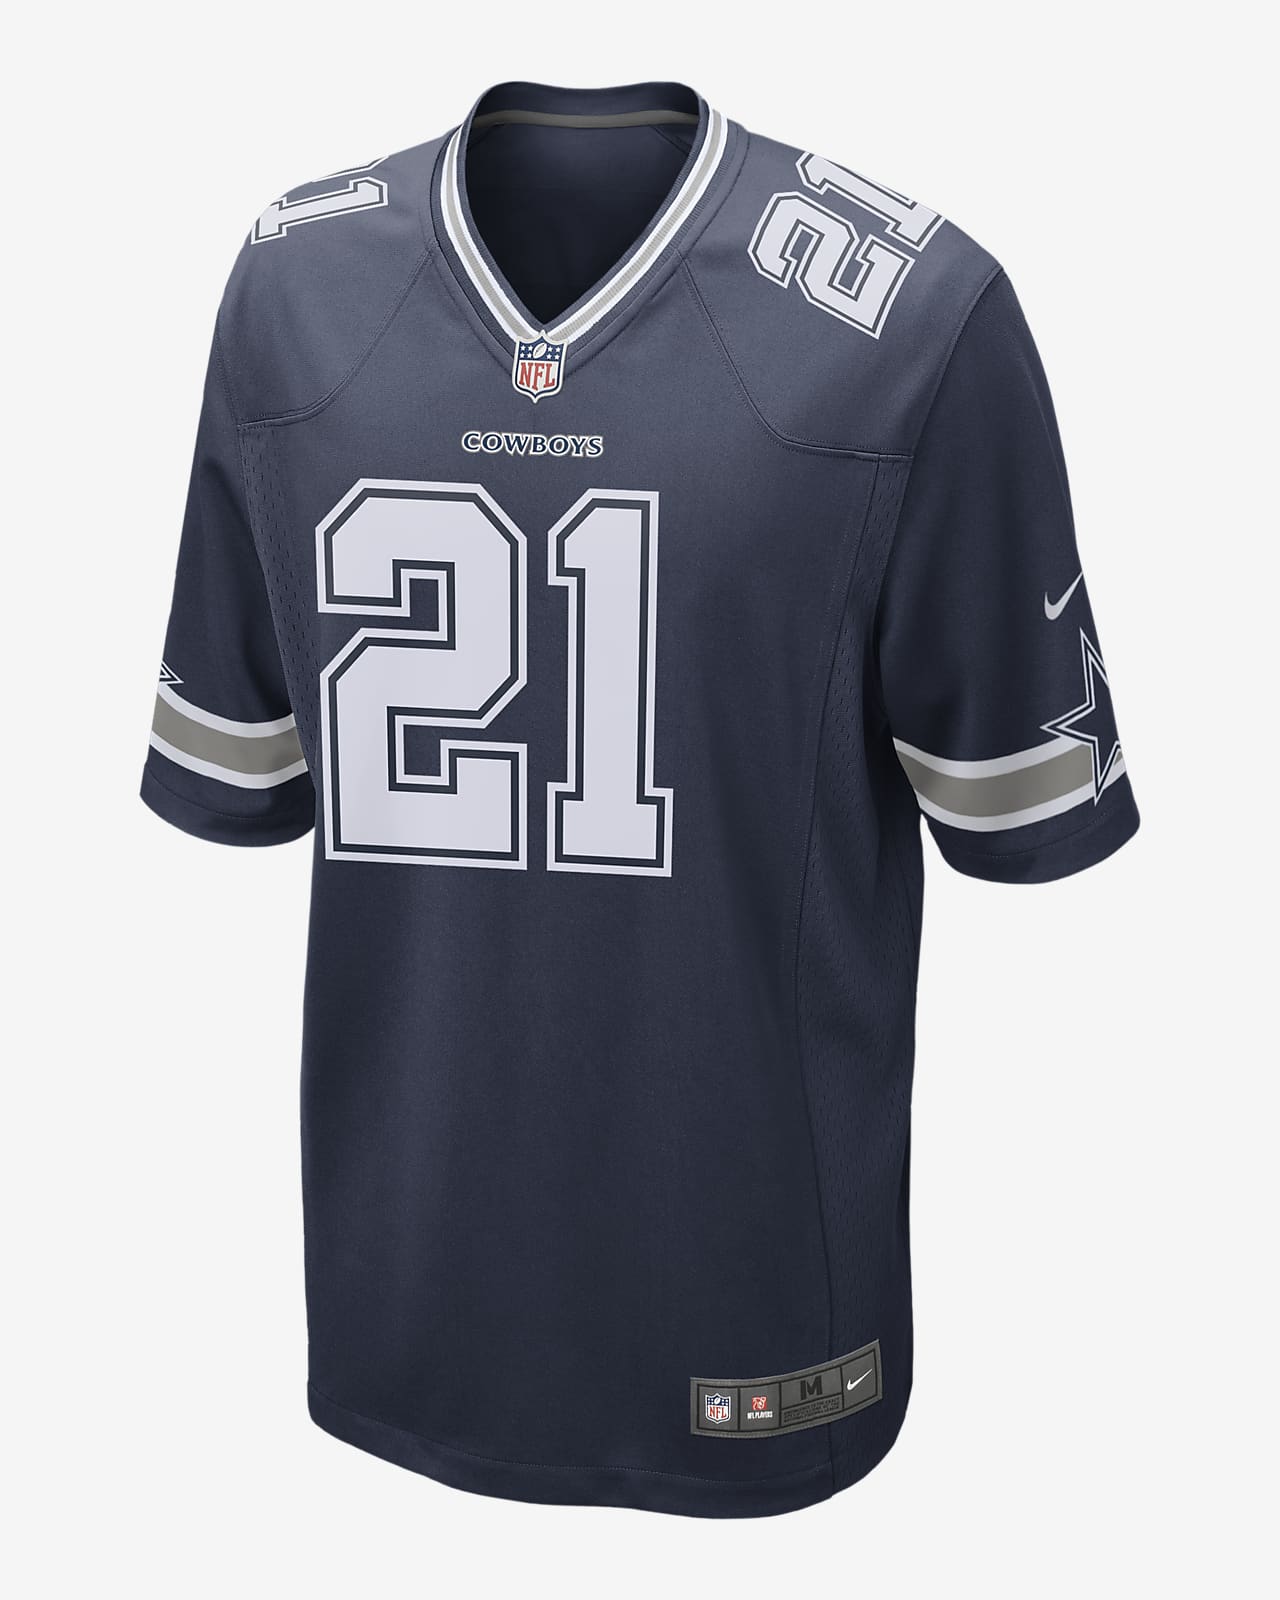 Męska koszulka meczowa do futbolu amerykańskiego NFL Dallas Cowboys (Ezekiel Elliott)